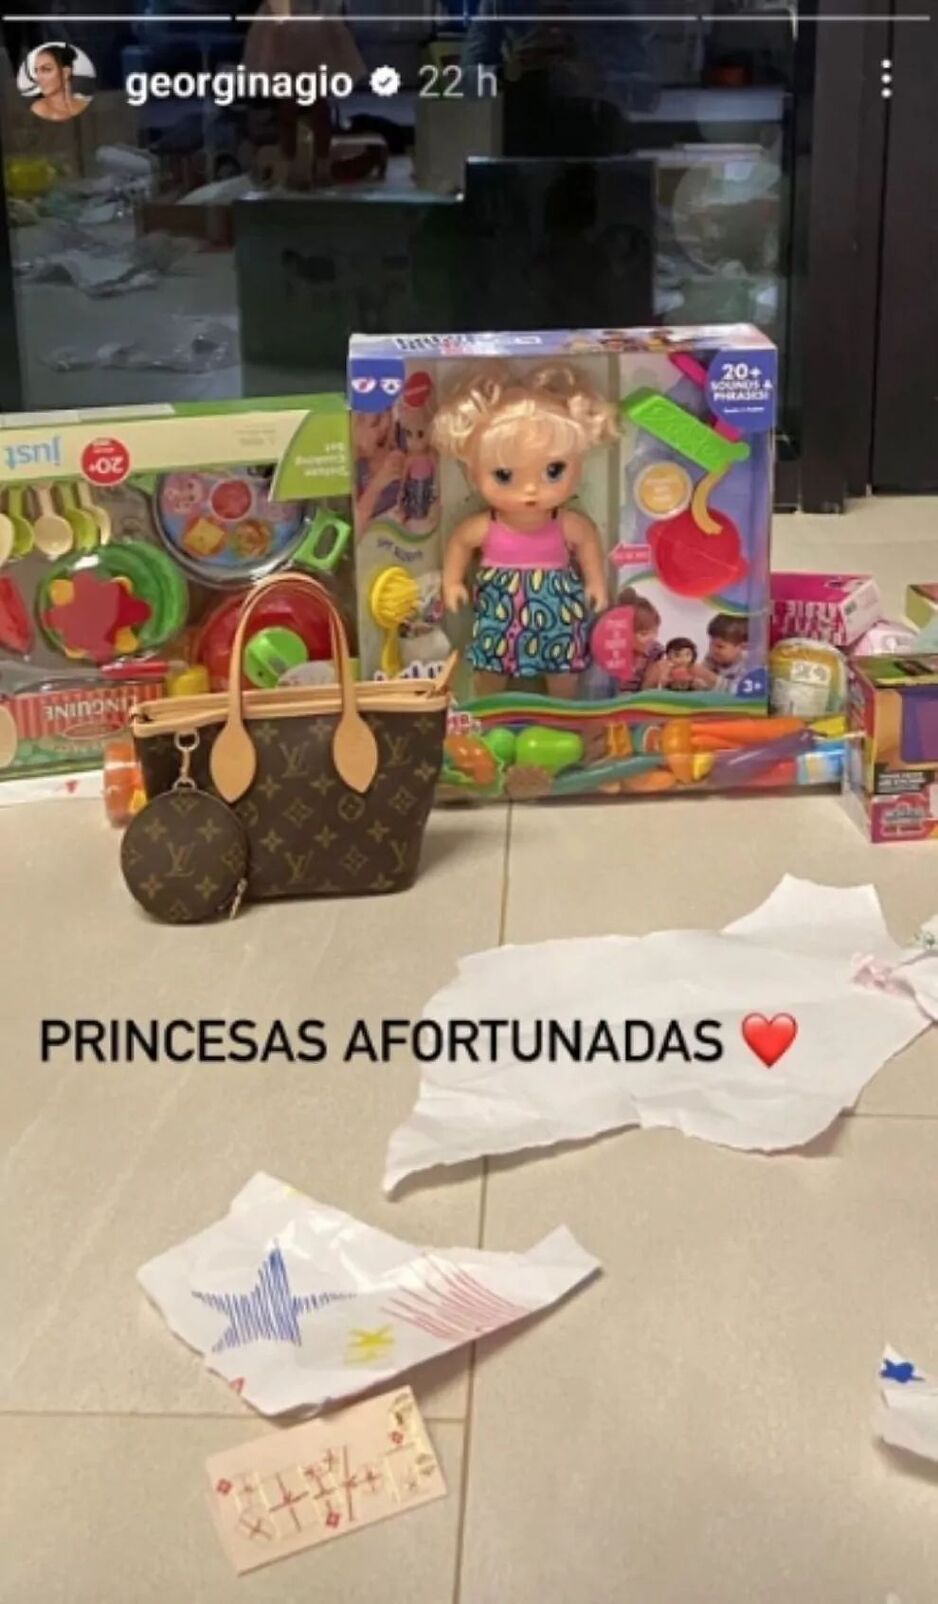 Pokloni koje je Georgina kupila kćerkama (Foto: Instagram)